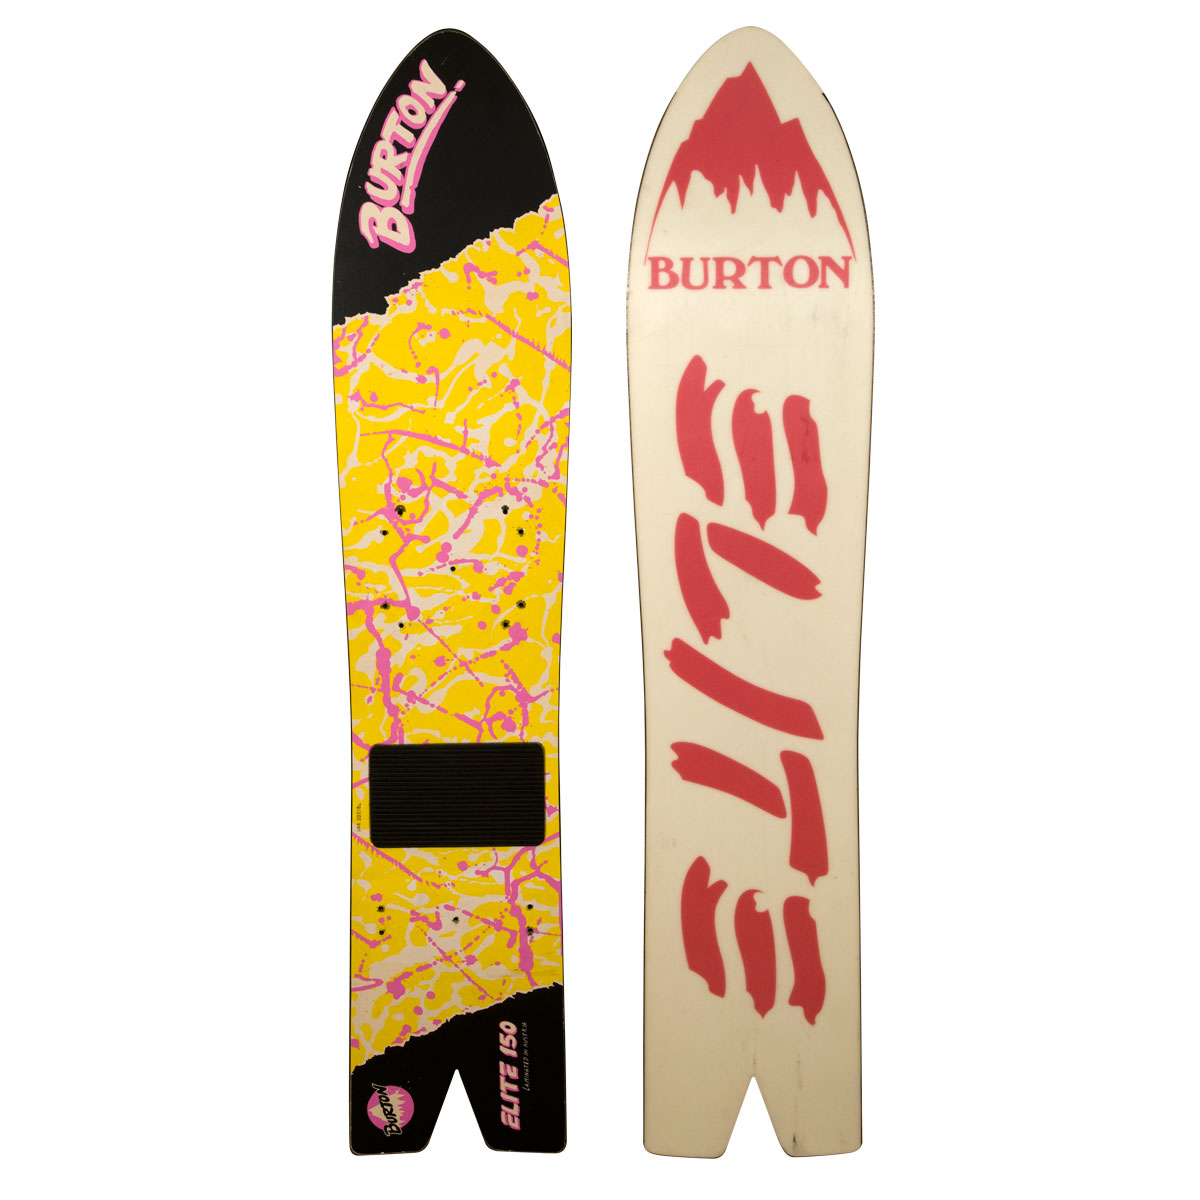 1988 Burton Elite 150 vintage snowboard